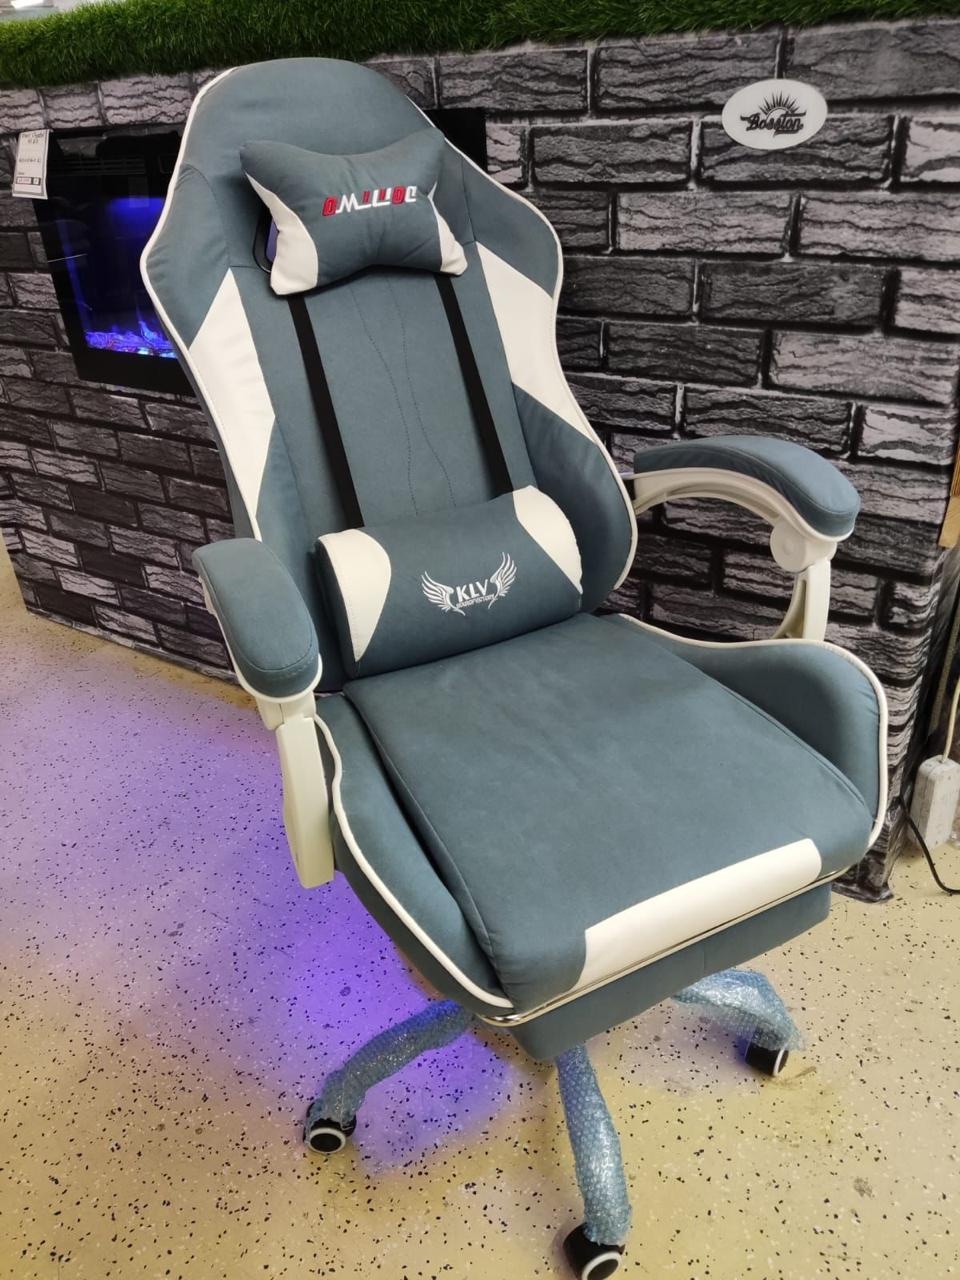 Компьютерное кресло - 14 000 ₽, заказать онлайн.